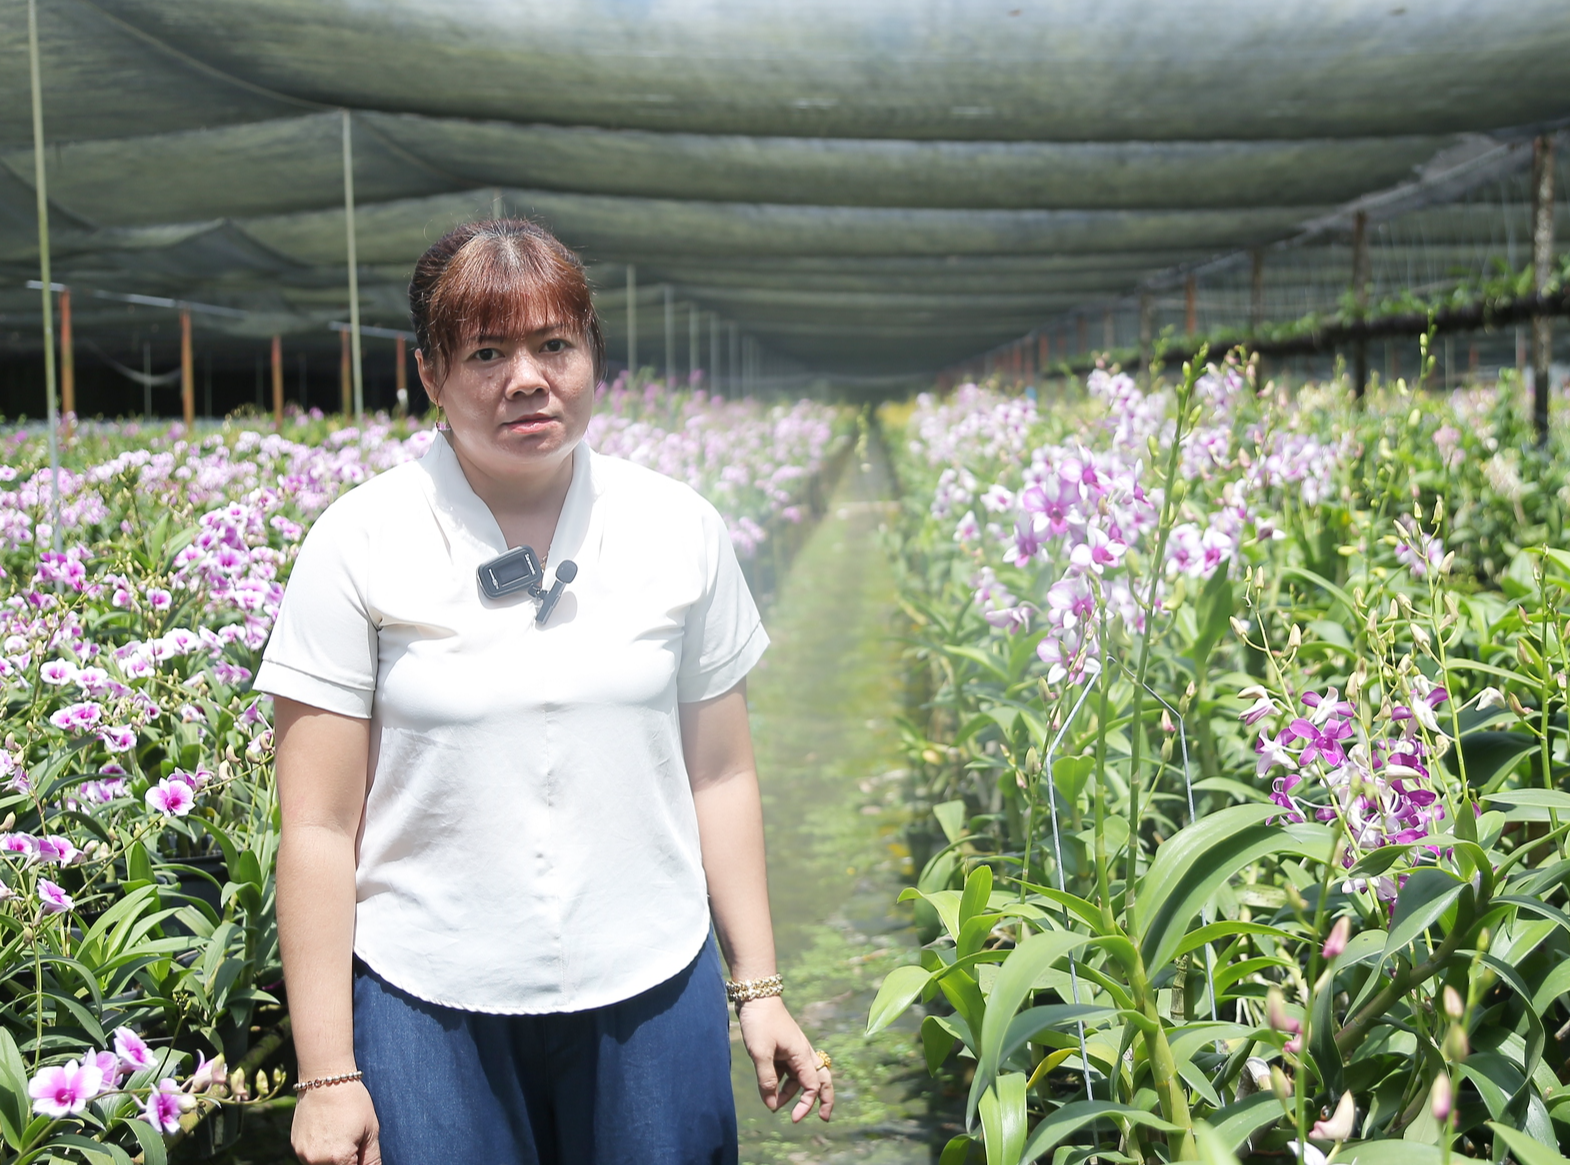 Câu chuyện về nữ nông dân bỏ việc văn phòng, trồng lan thu tiền tỷ, được TP.HCM vinh danh - Ảnh 6.